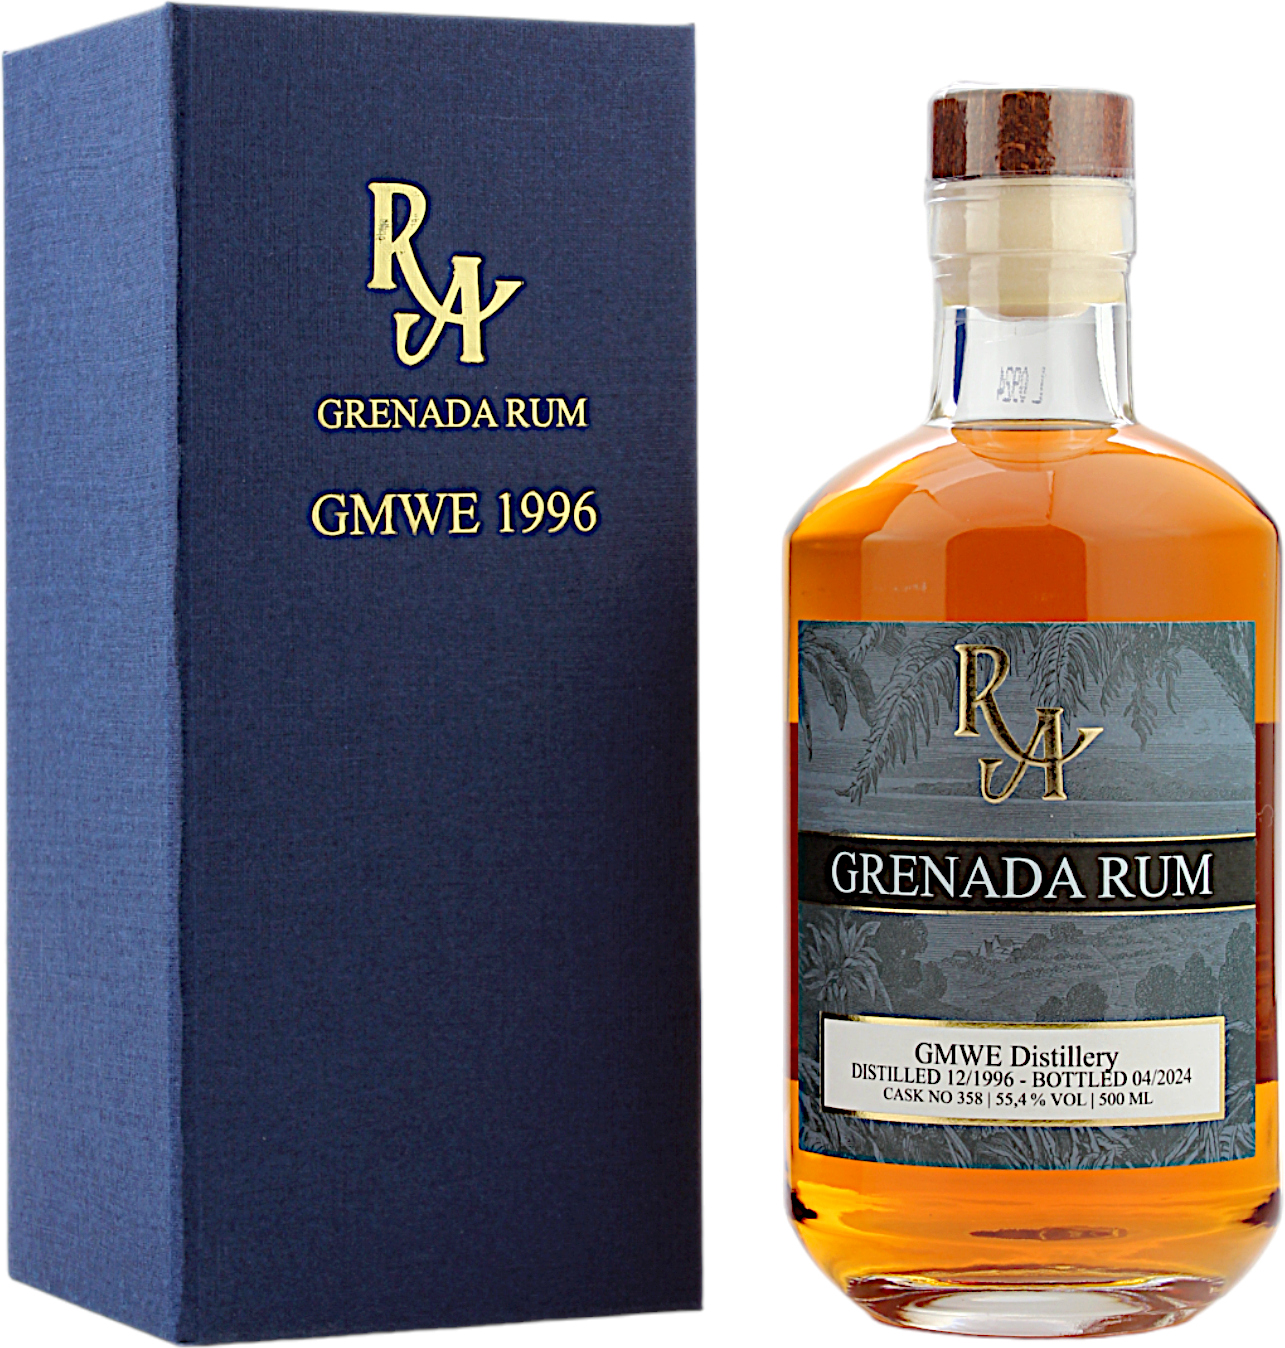 Rum Artesanal Grenada Rum 27 Jahre 1996/2024 55.4% 0,5l